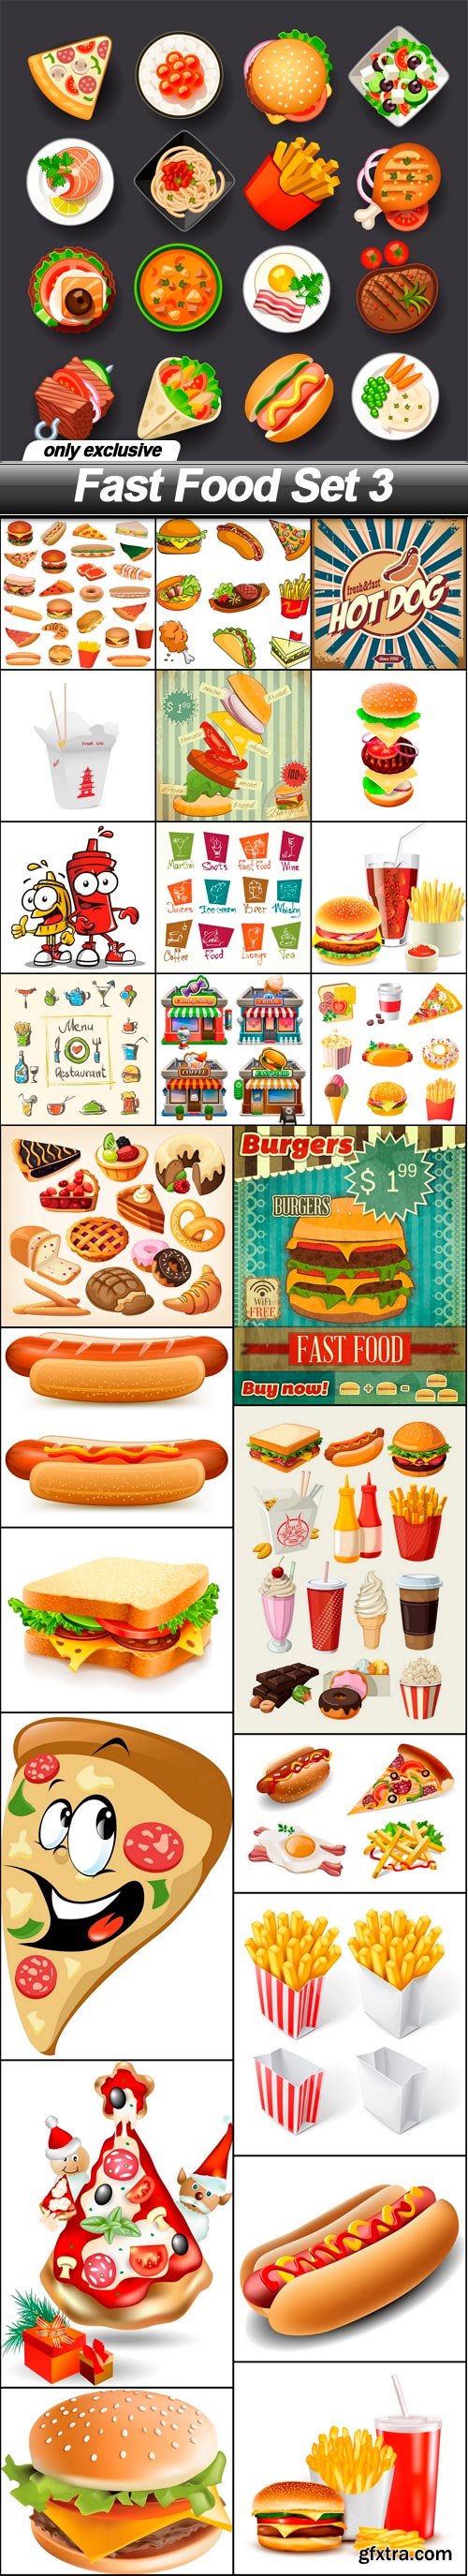 Fast Food Set 3 - 25 EPS